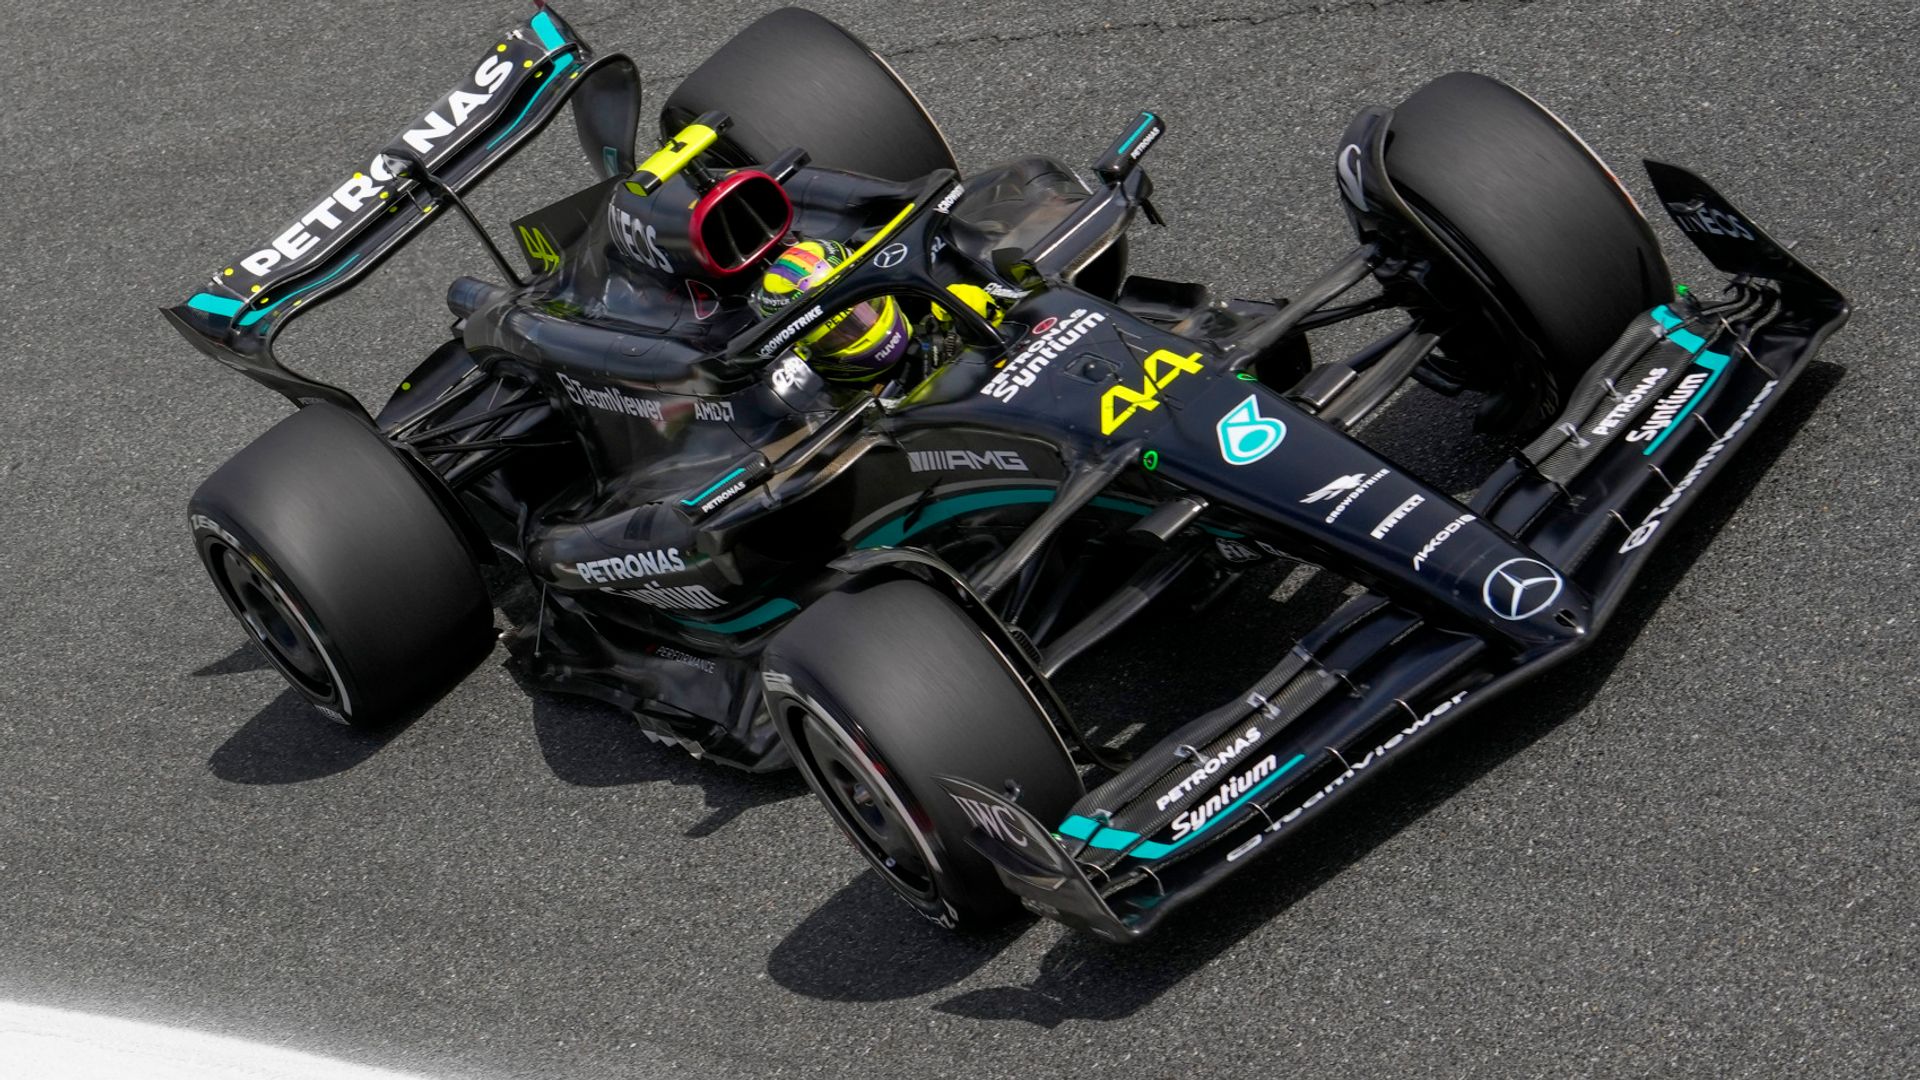 Italian GP: Practice underway, Hamilton comments on Max LIVE!